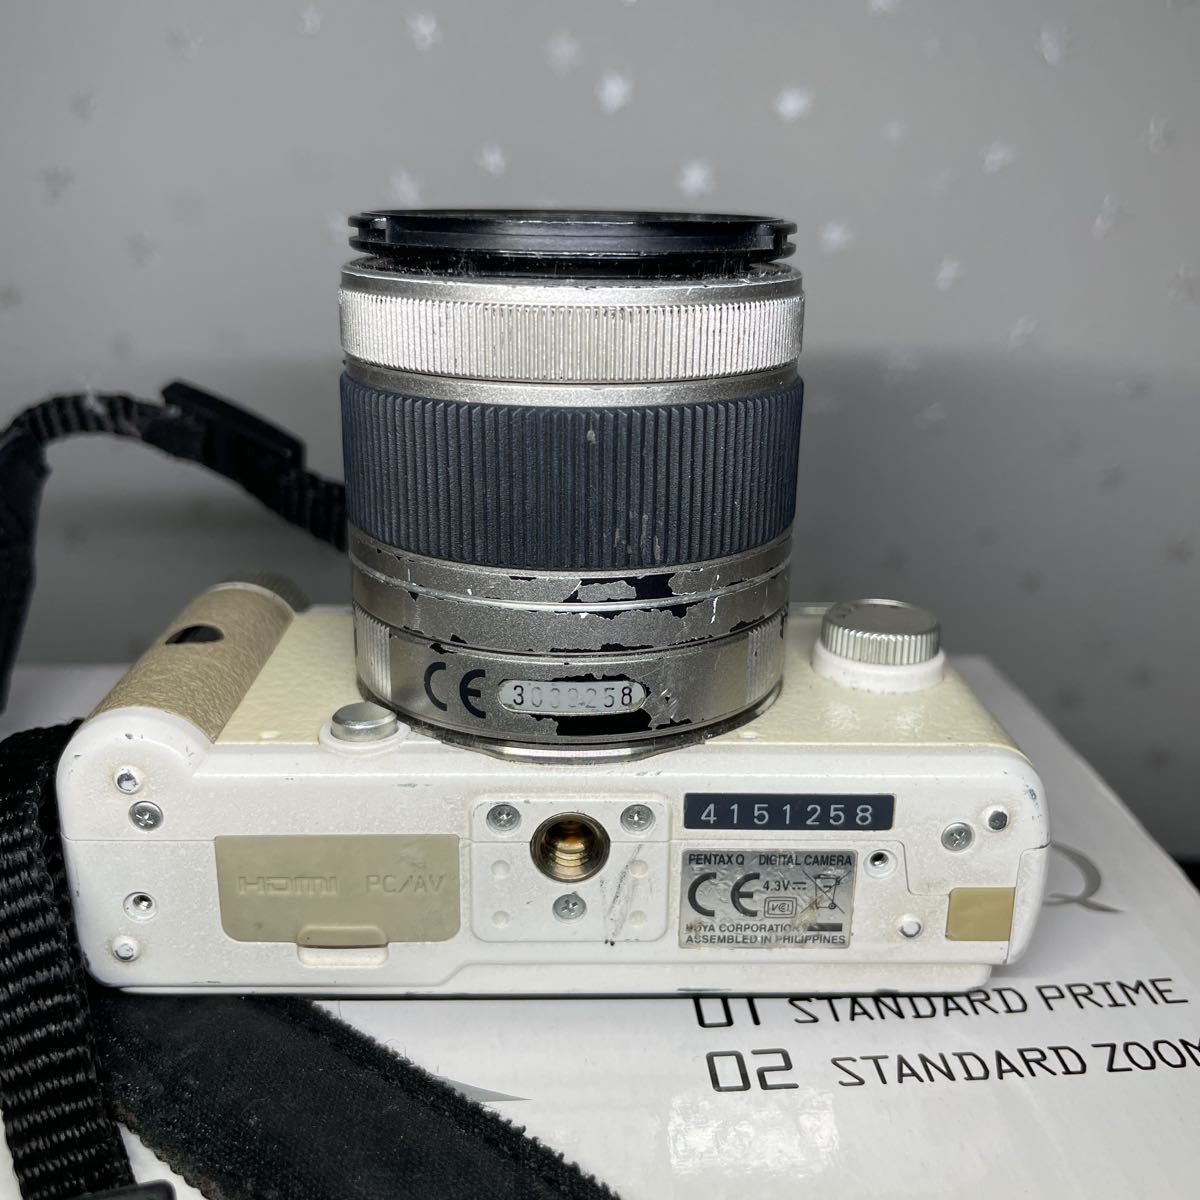 PENTAX Q レンズ1:2.8-4.5 5-15mm デジタルカメラ ホワイト 